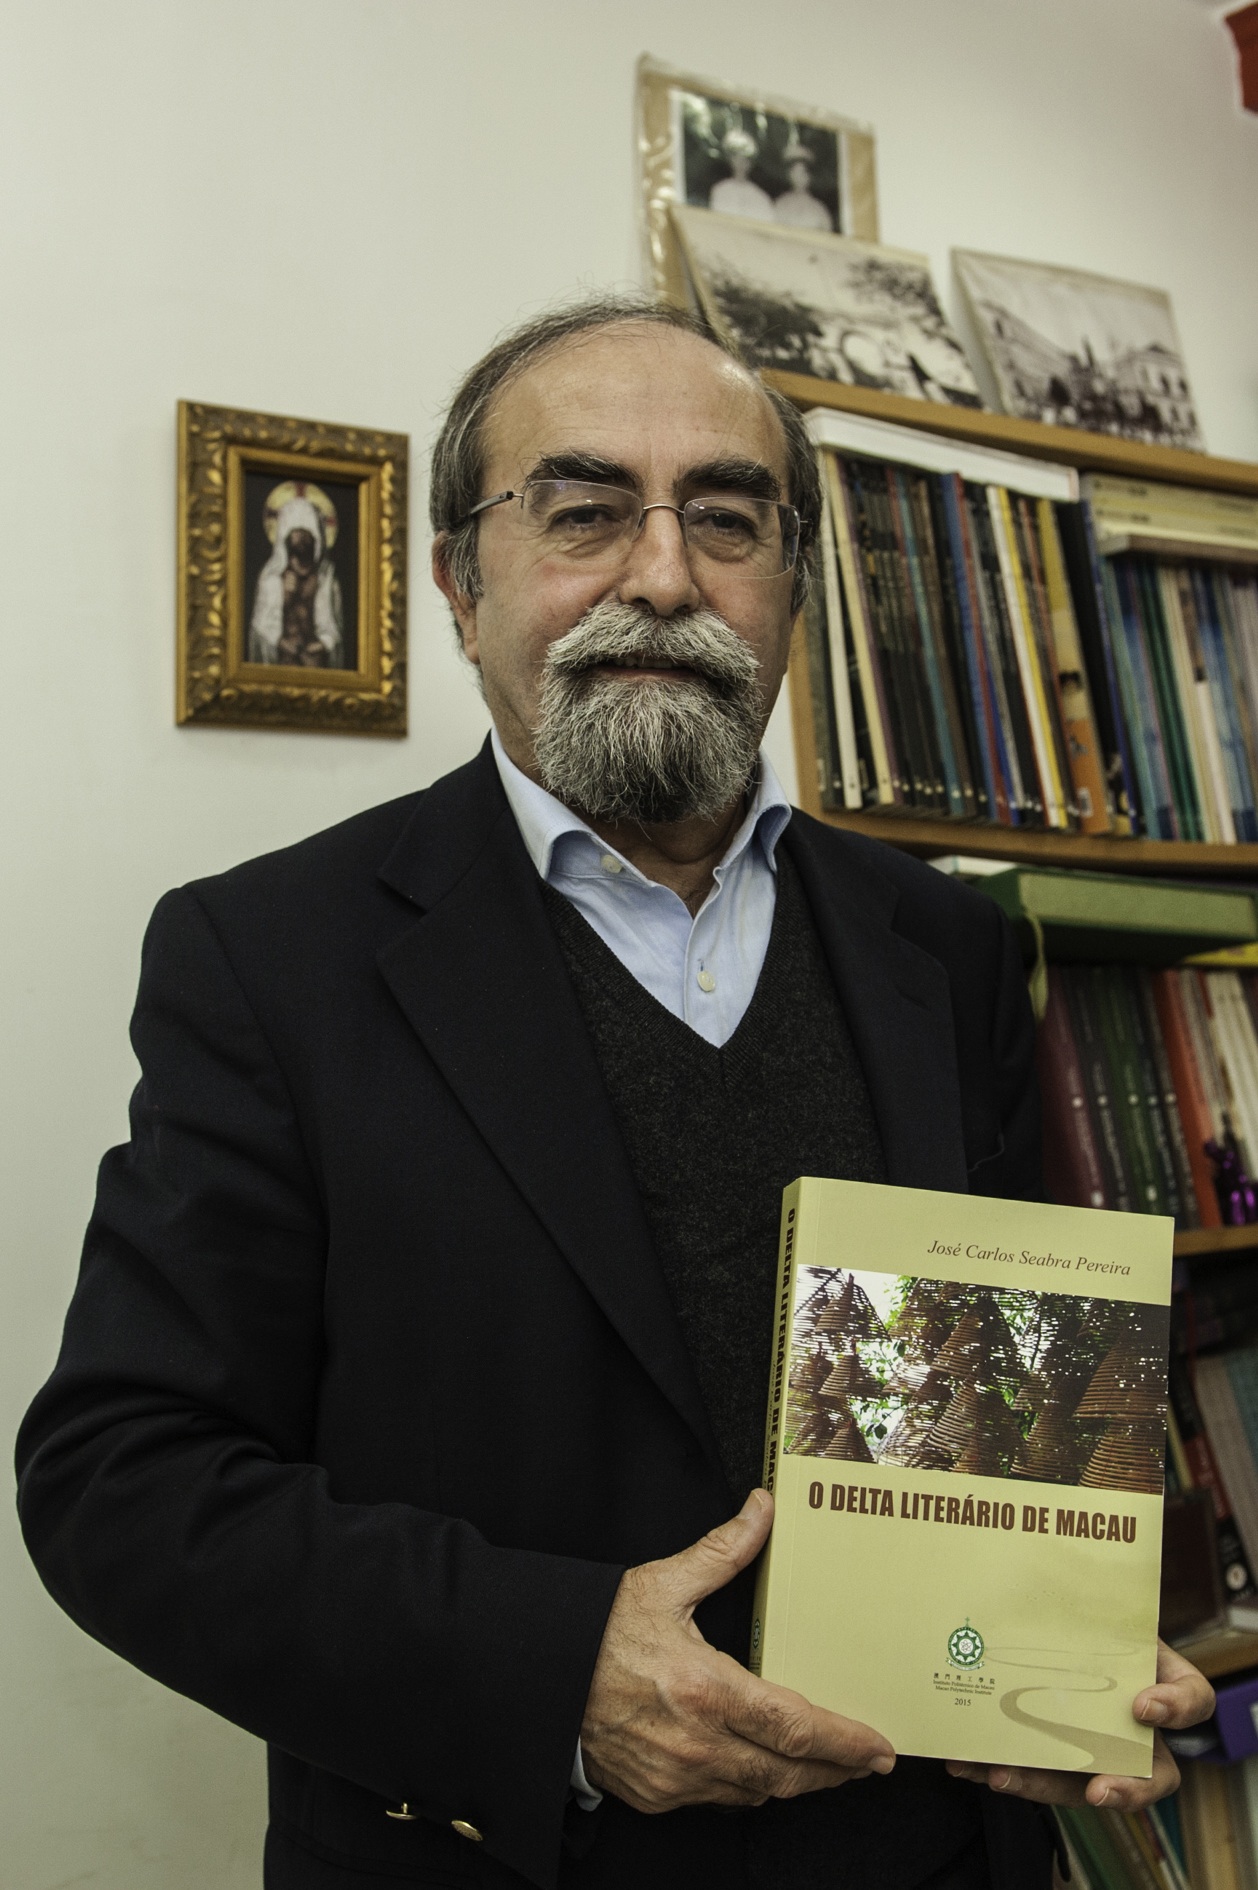 José Carlos Seabra Pereira | Professor universitário e crítico literário